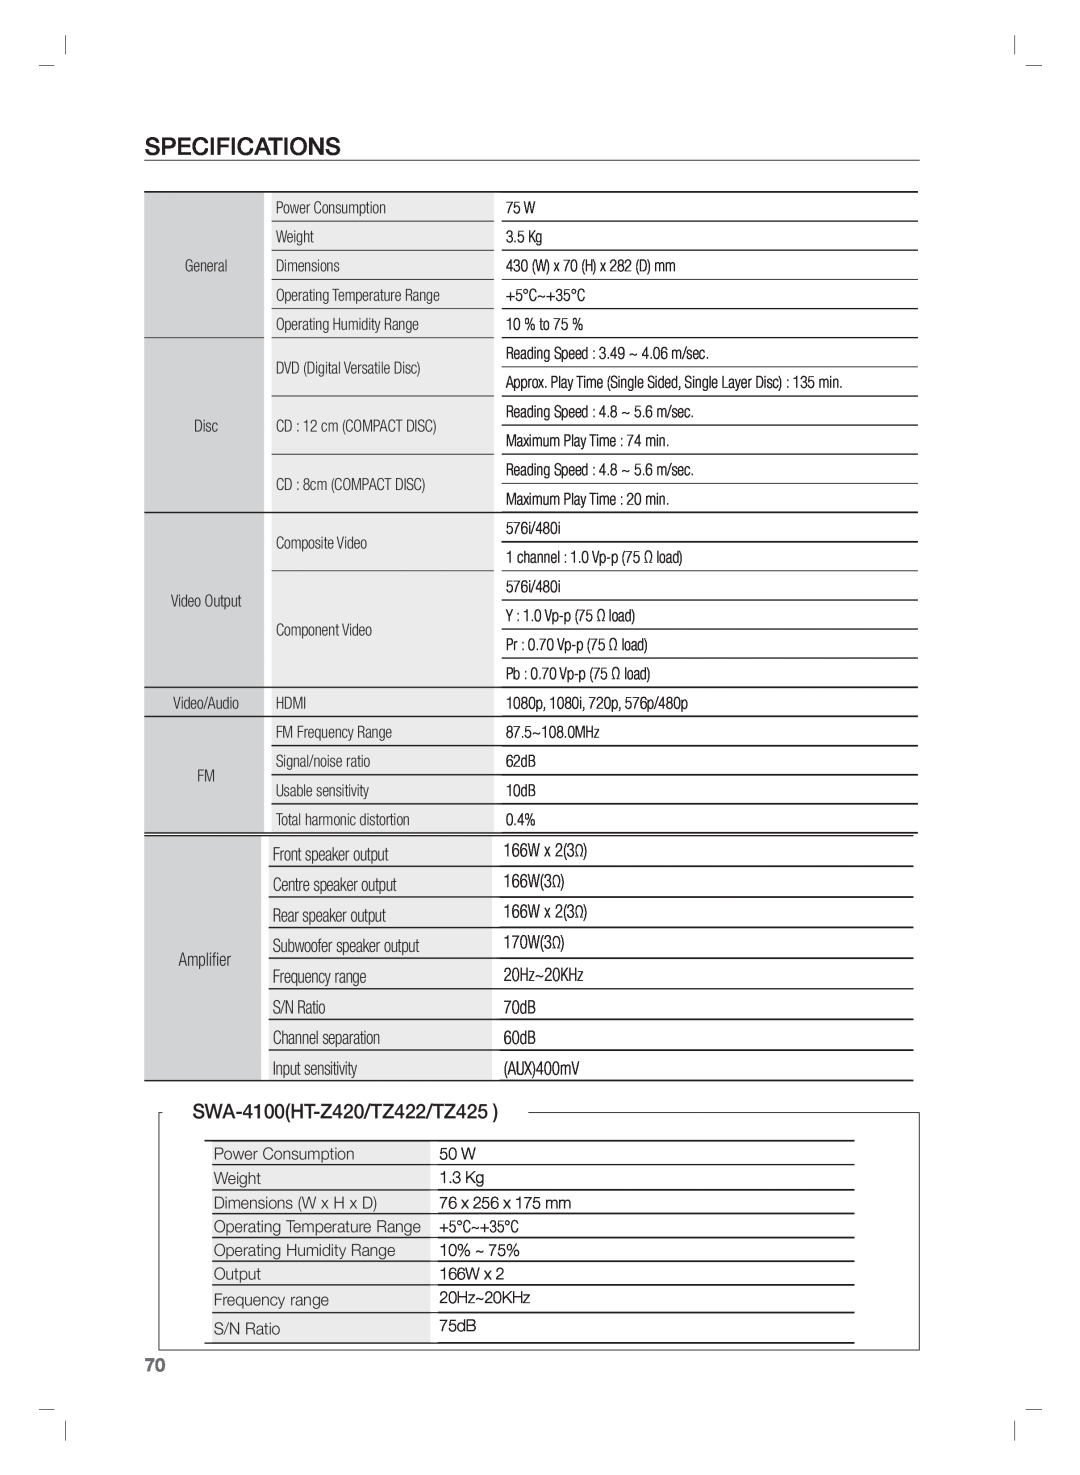 Samsung HT-TZ325R/XER, HT-Z220T/MEA, HT-TZ325T/SIM, HT-TZ325T/FMC, HT-TZ325T/MEA Specifications, SWA-4100HT-Z420/TZ422/TZ425 